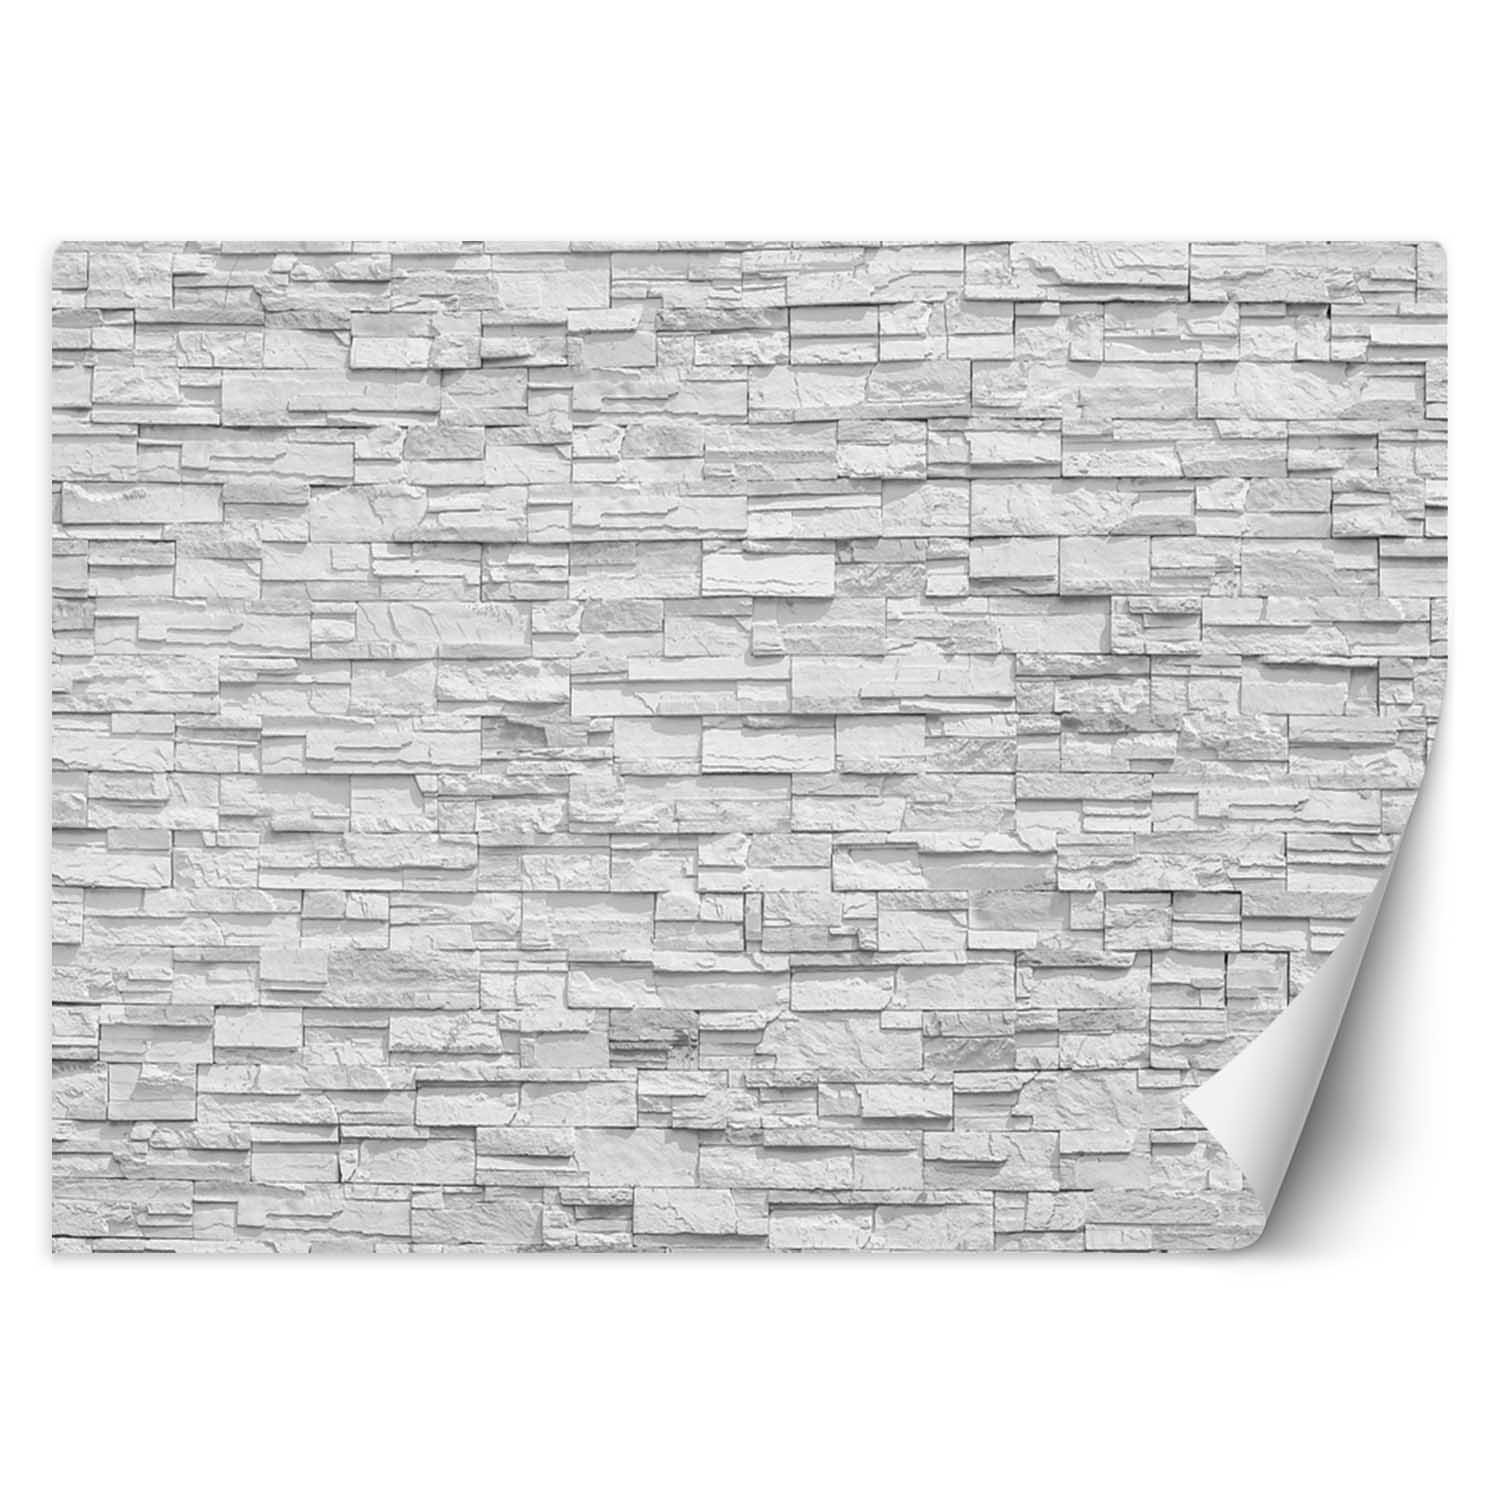 Trend24 – Behang – Witte Stenen Muur – Vliesbehang – Behang Woonkamer – Fotobehang – 450×315 cm – Incl. behanglijm